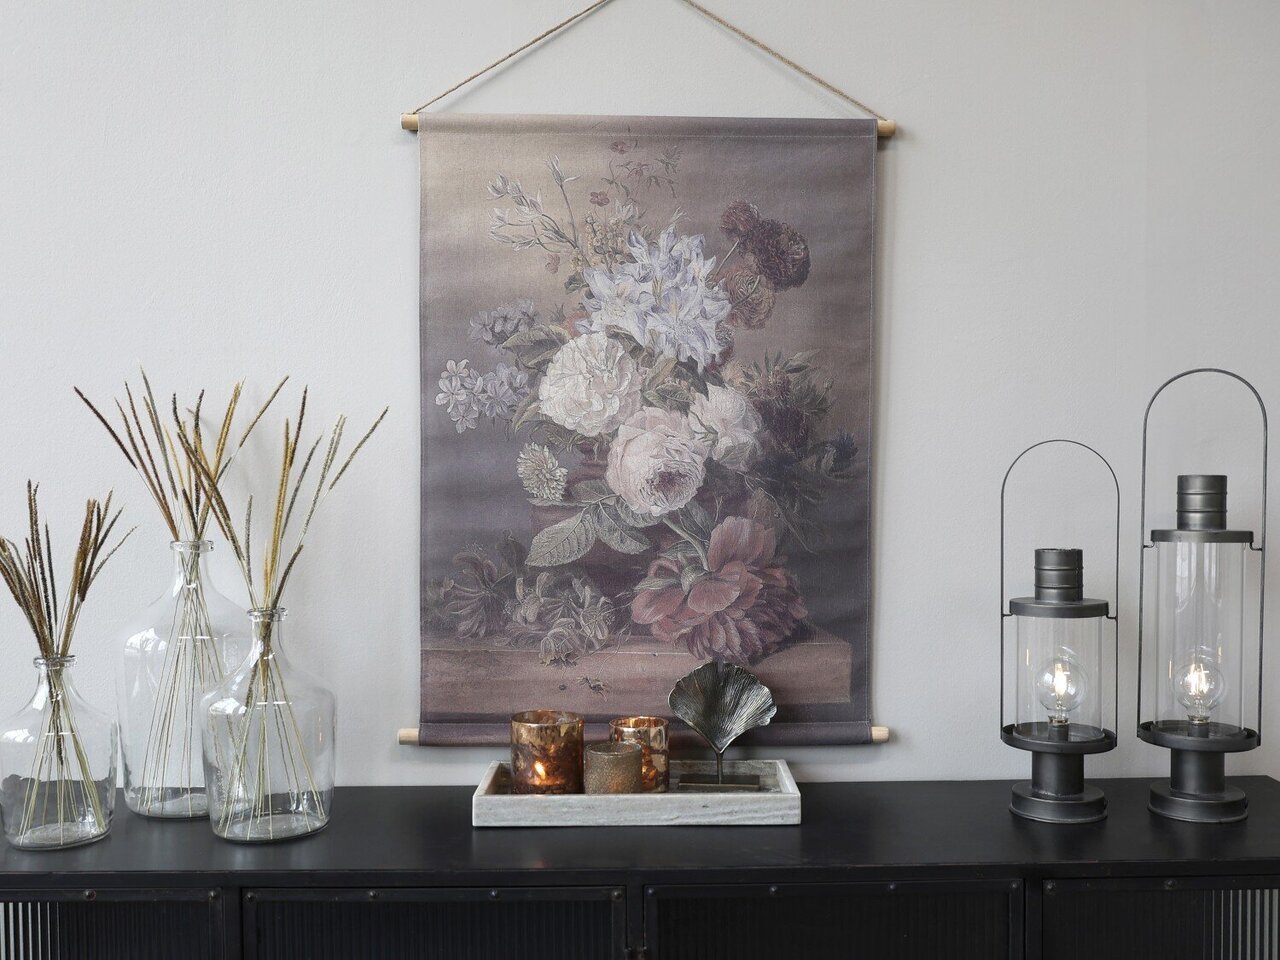 Chic Antique Leinwandbild Blumendruck zum Aufhängen Preview Image